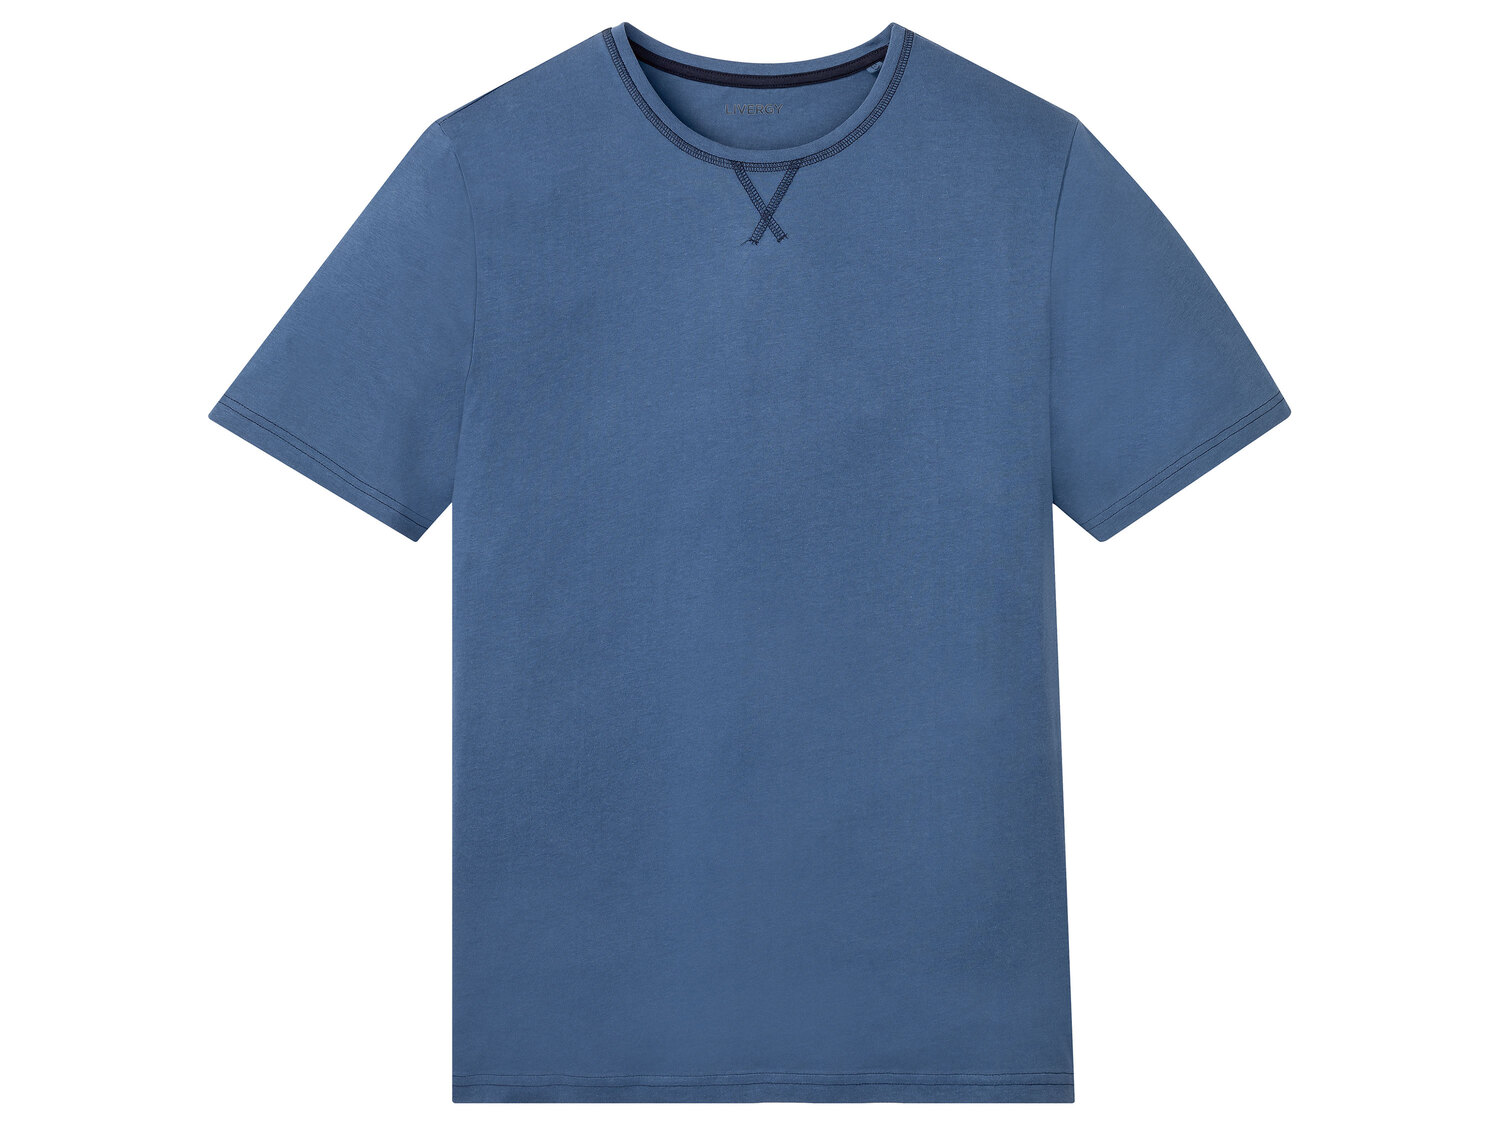 T-shirt de nuit homme en coton bio , le prix 3.99 &#8364; 
- Du S au XL selon ...